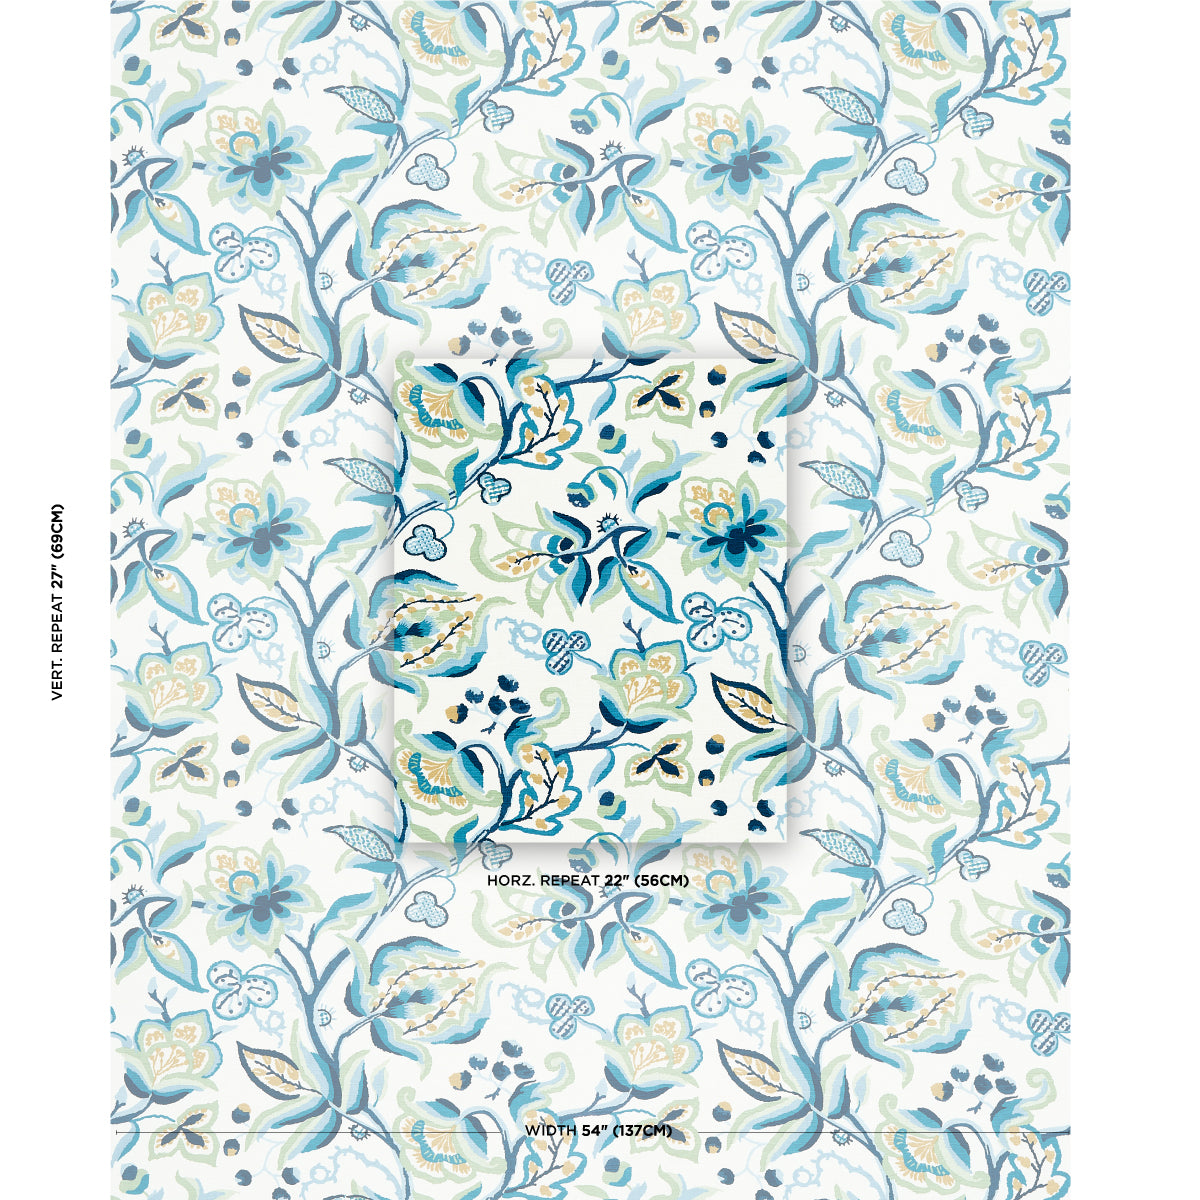 Purchase 180970 | Azulejos, Navy & Leaf - Schumacher Fabric